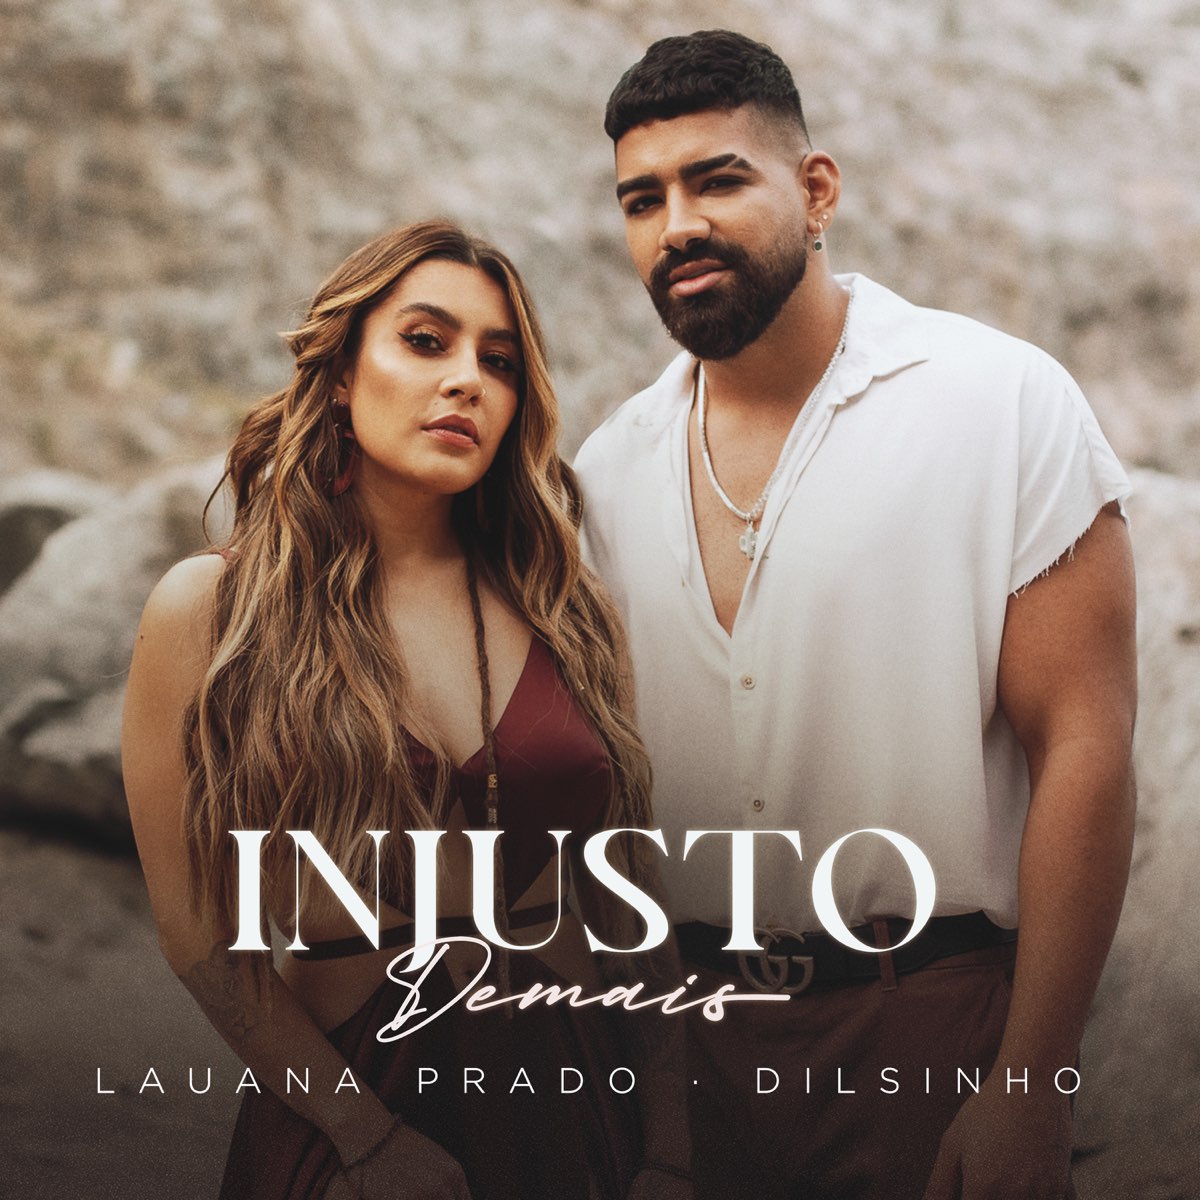 Lauana Prado & Dilsinho — Injusto Demais cover artwork